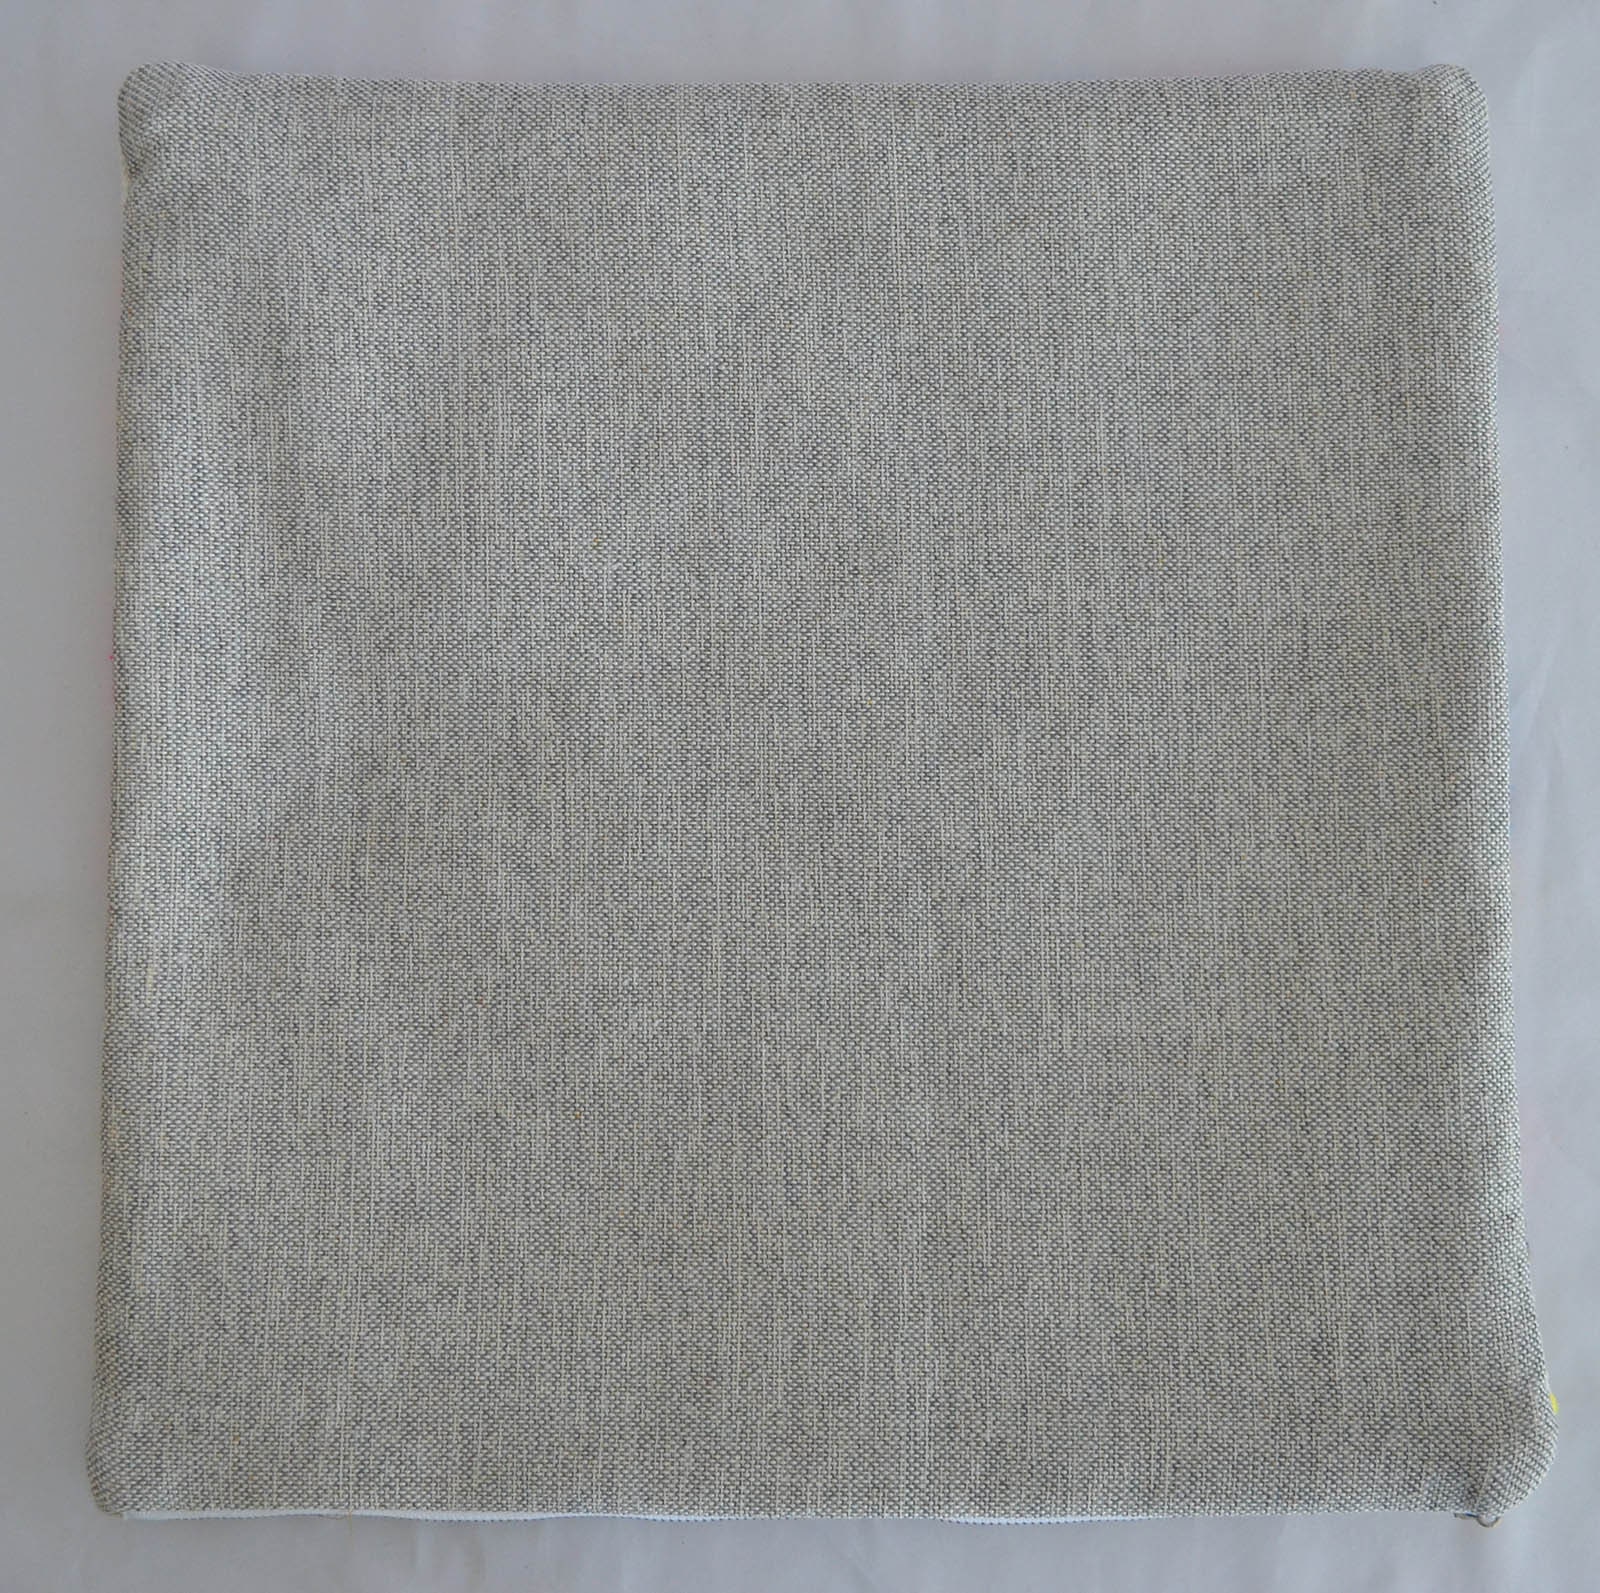 16x16 in Kilim cushion cover Turkish pillow sham kilim rug | Etsy